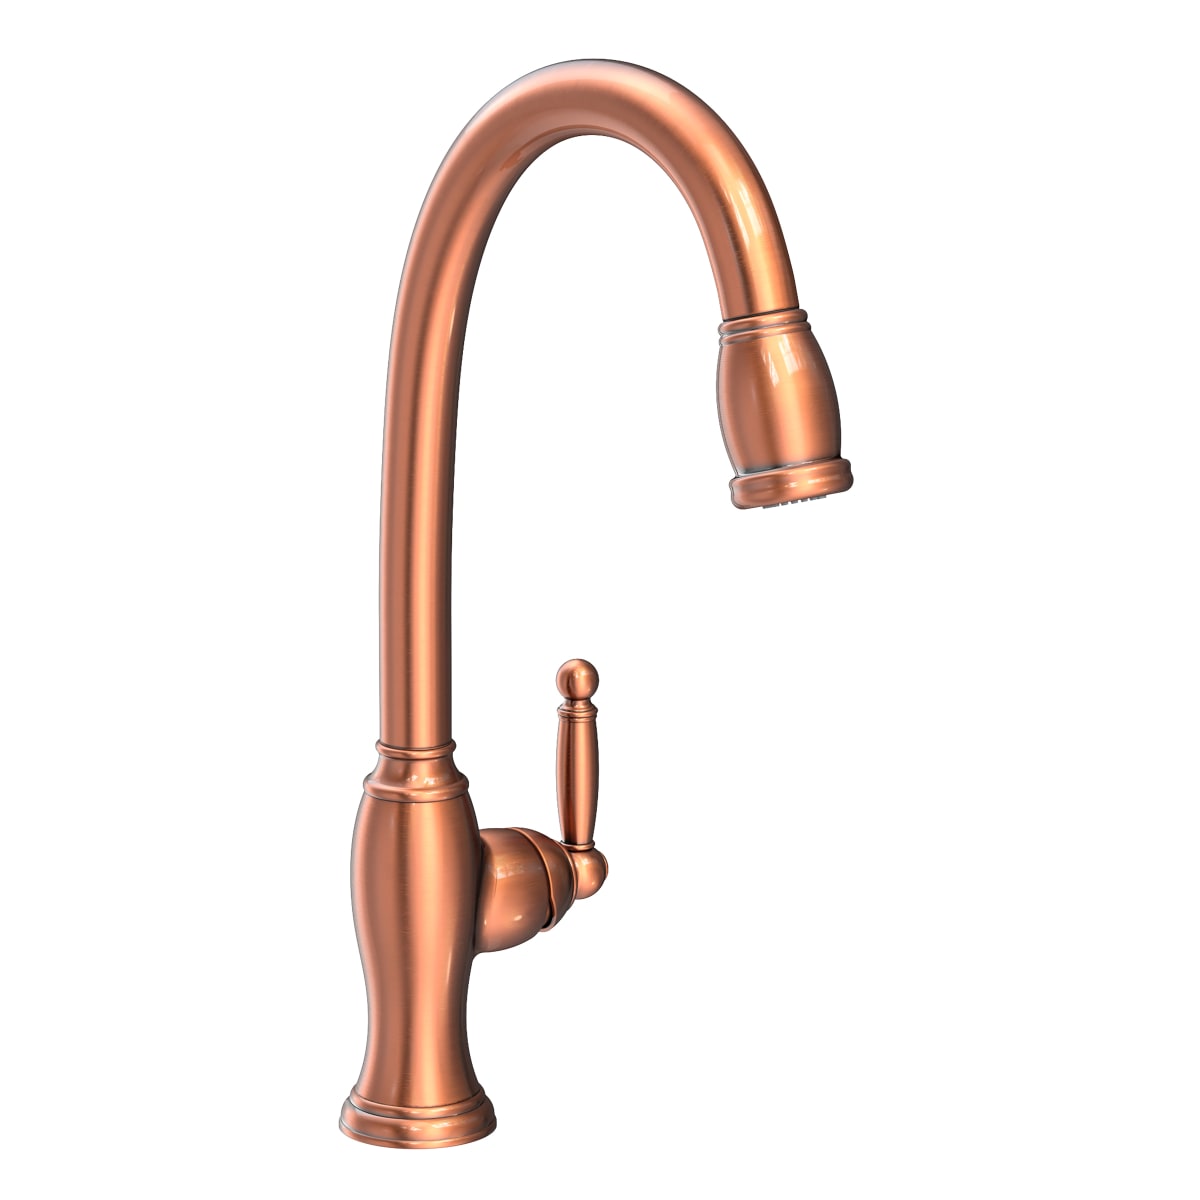 Newport Brass 2940-5103 Taft Pull-Down Kitchen Faucet